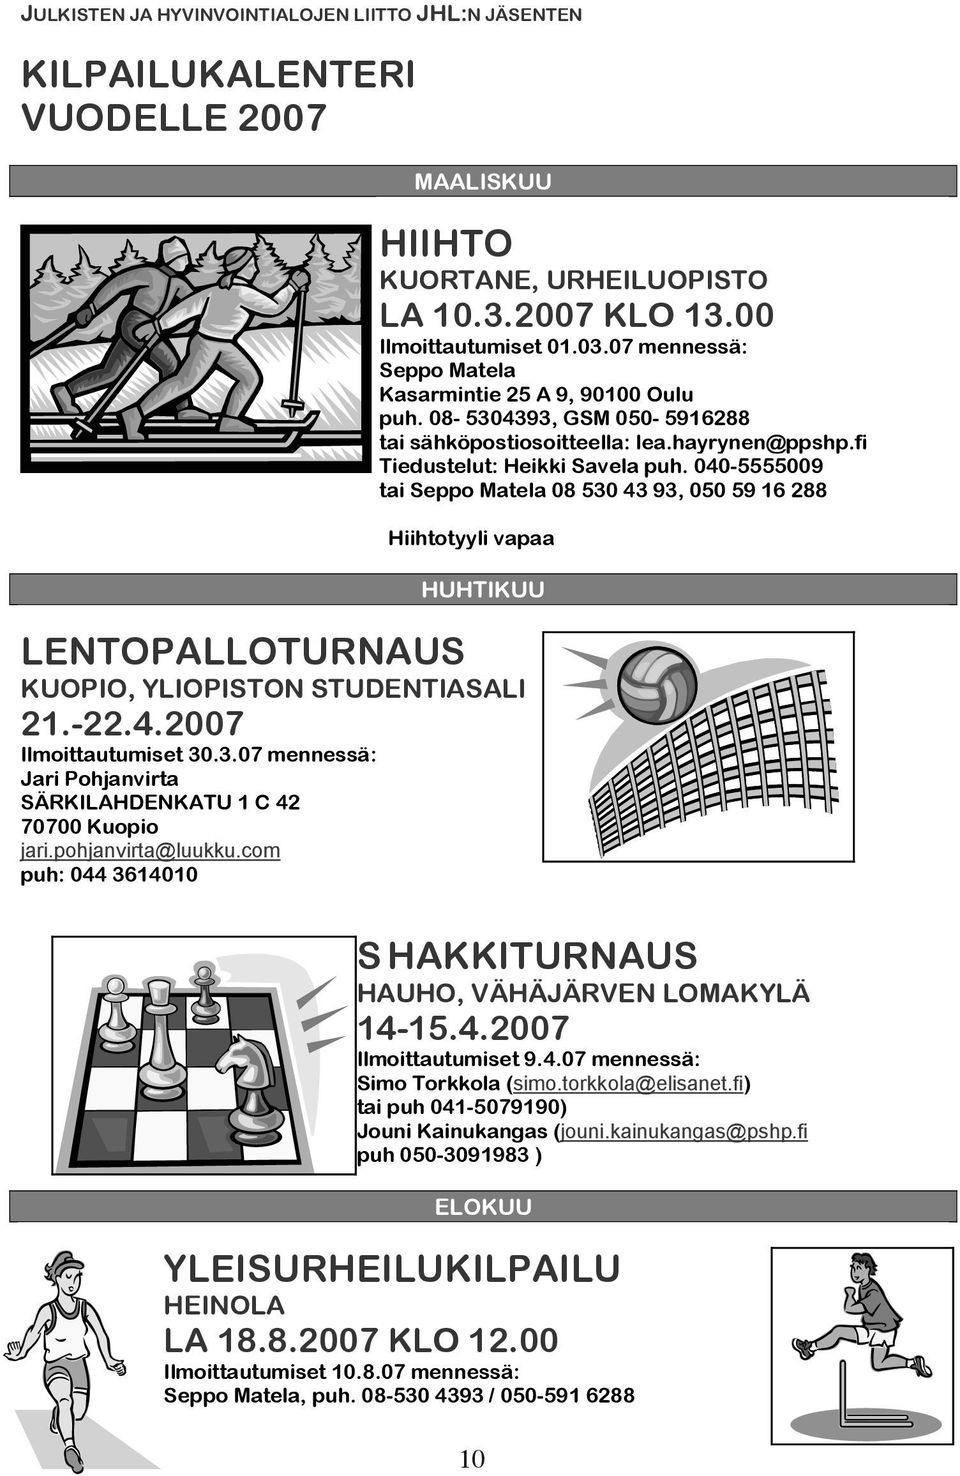 040-5555009 tai Seppo Matela 08 530 43 93, 050 59 16 288 Hiihtotyyli vapaa HUHTIKUU LENTOPALLOTURNAUS KUOPIO, YLIOPISTON STUDENTIASALI 21.-22.4.2007 Ilmoittautumiset 30.3.07 mennessä: Jari Pohjanvirta SÄRKILAHDENKATU 1 C 42 70700 Kuopio jari.